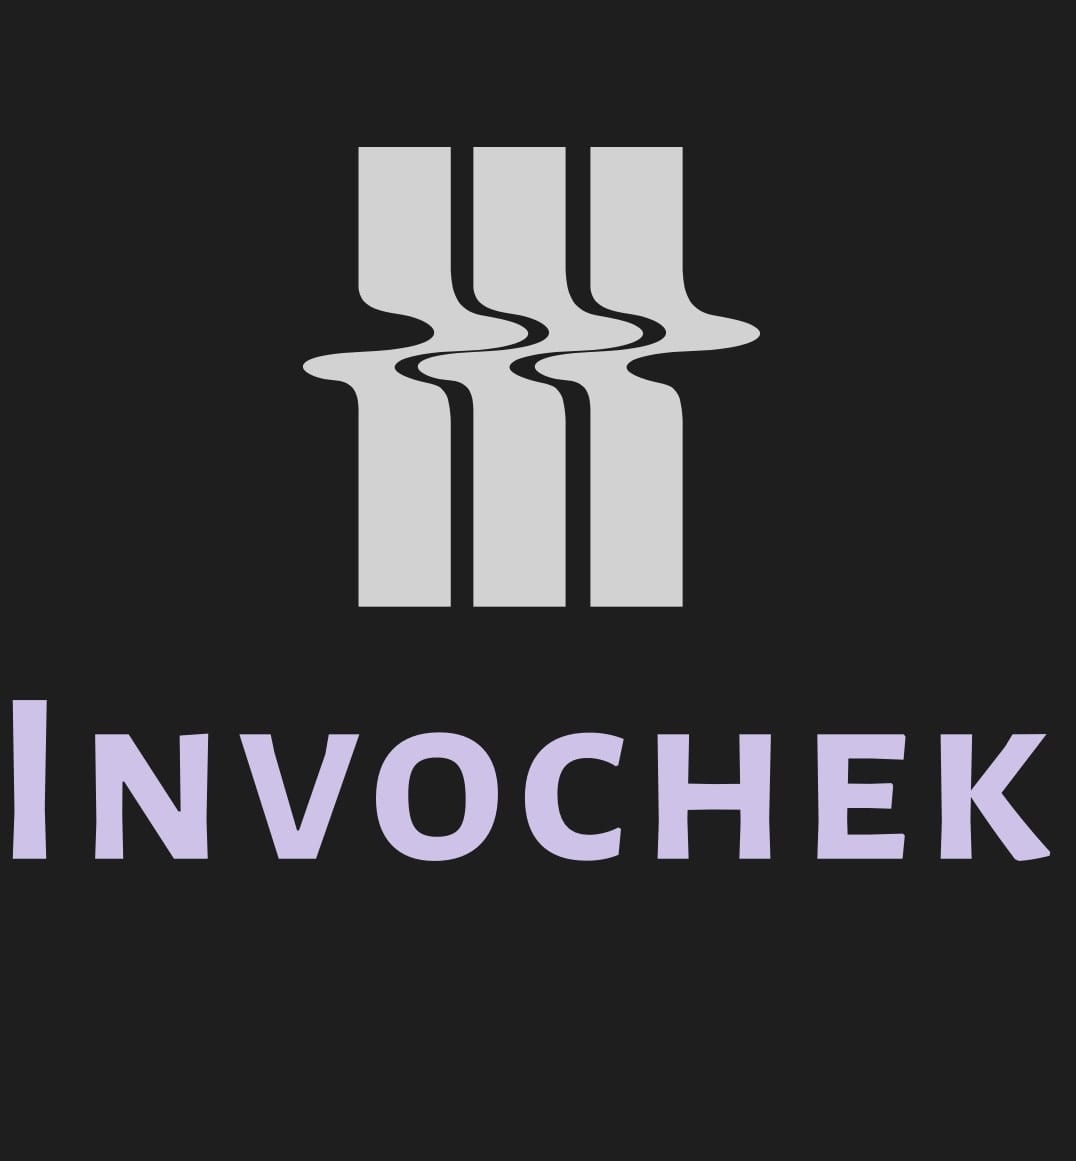 Invochek